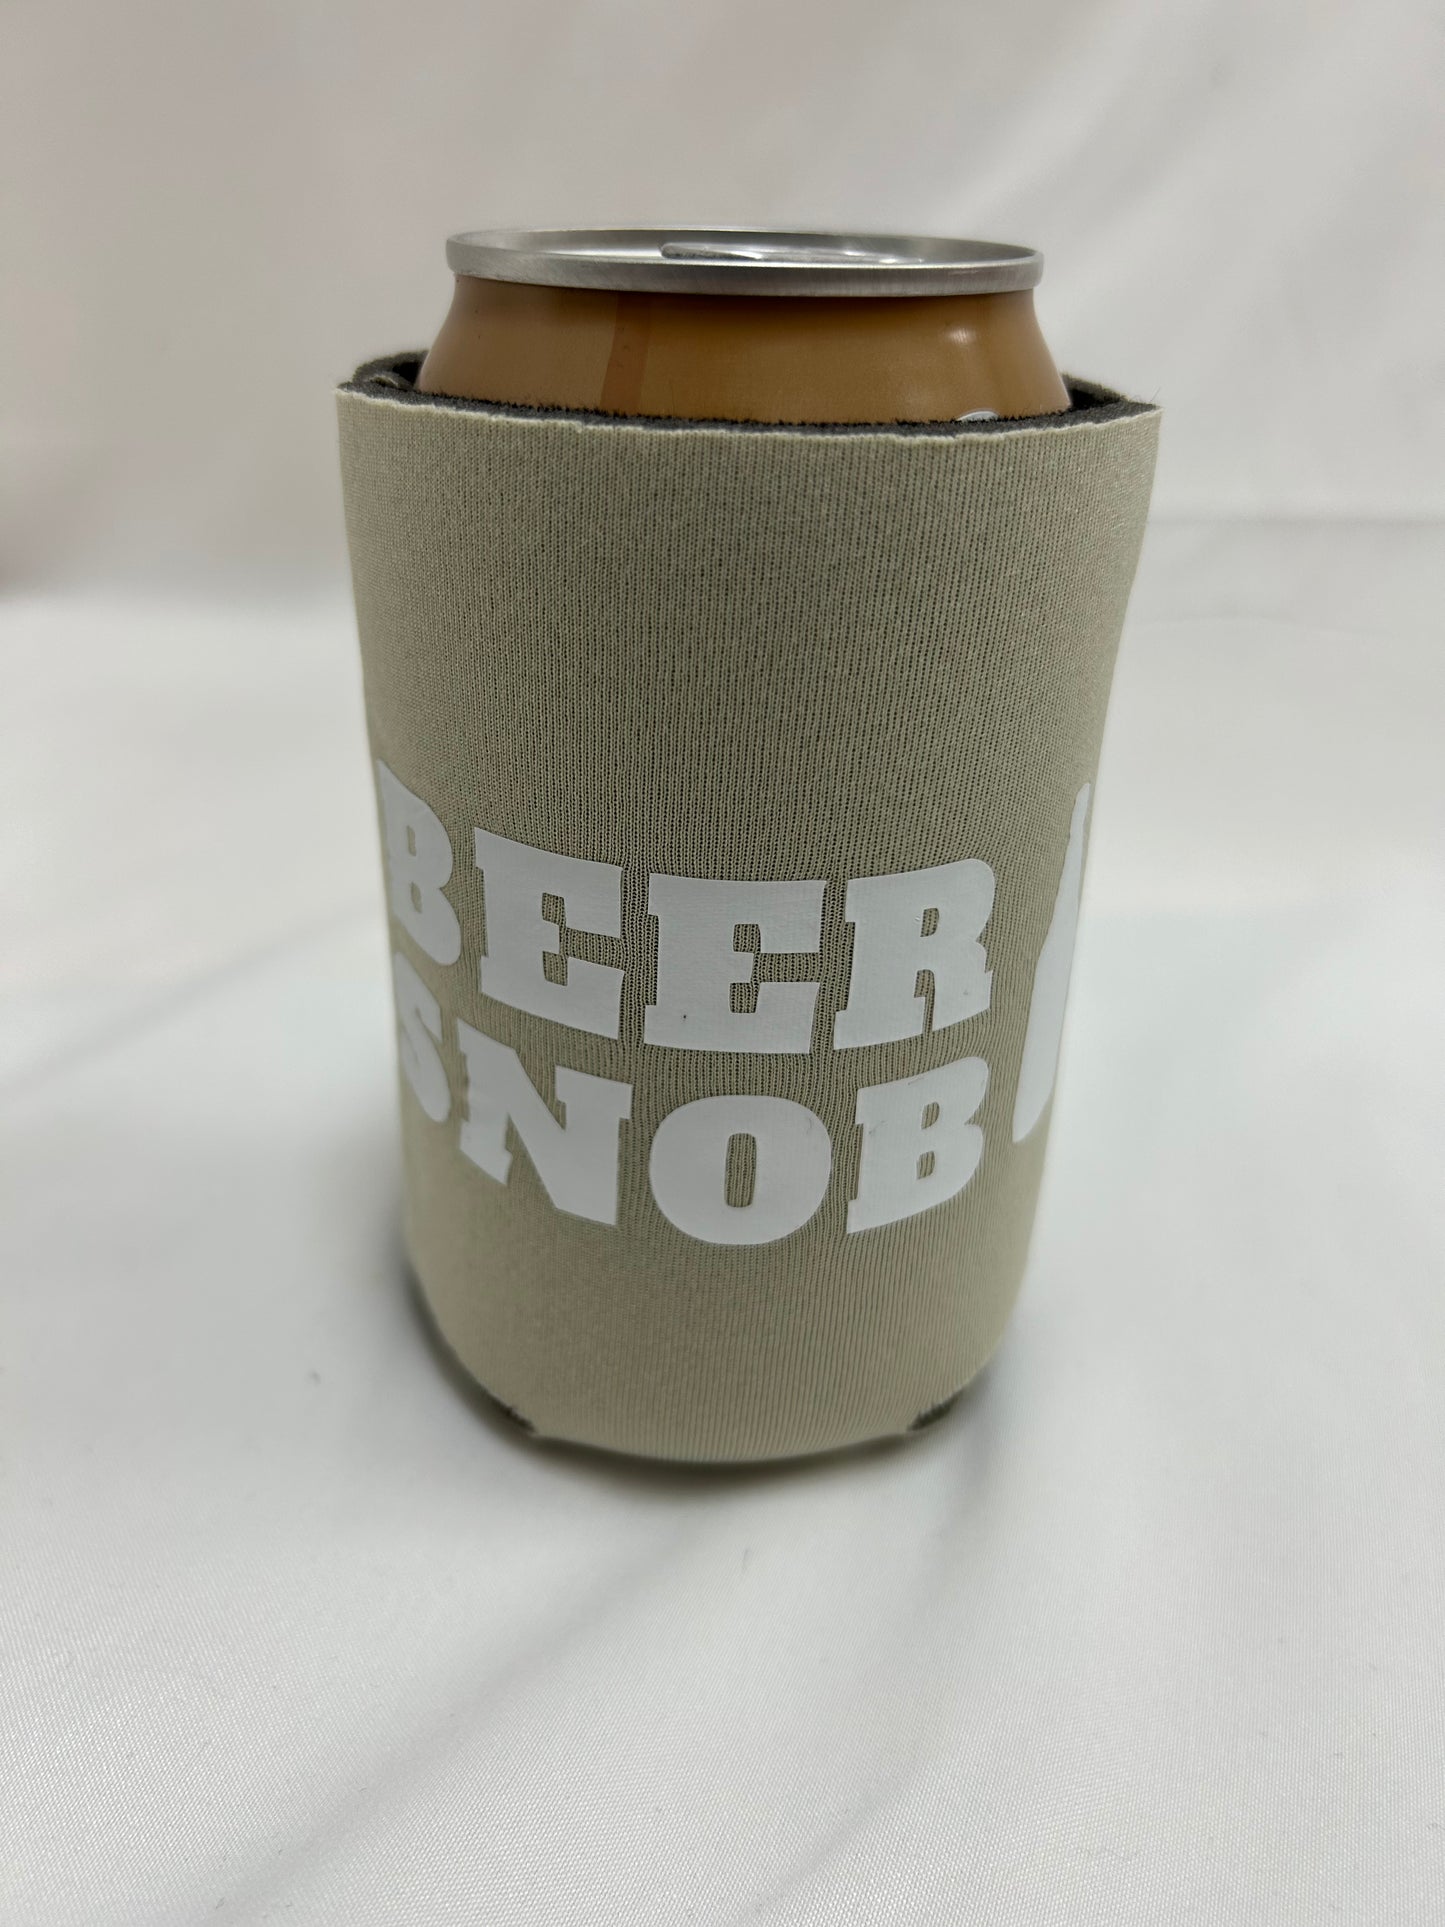 Enfriador de latas de cerveza snob